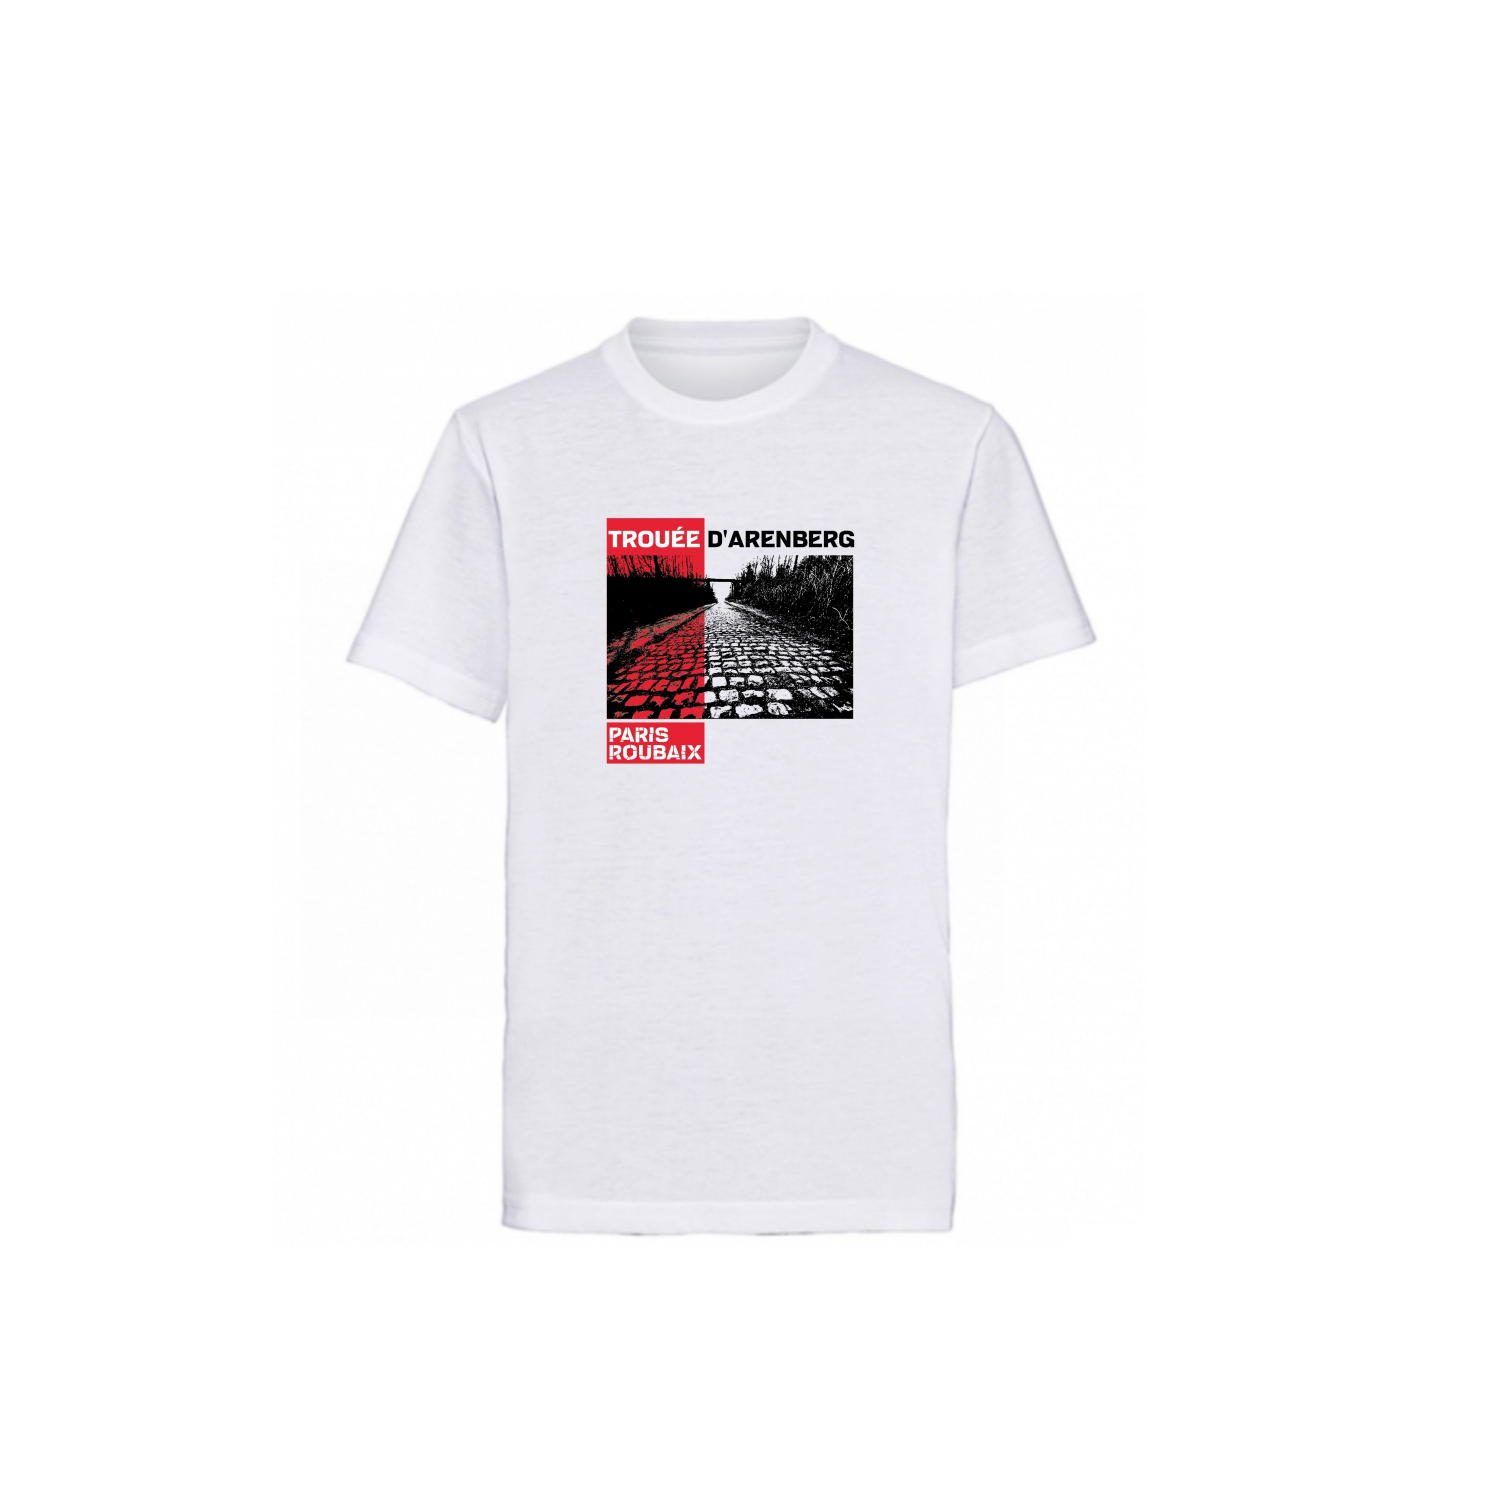 T-shirt Paris Roubaix "Trouée" Enfant